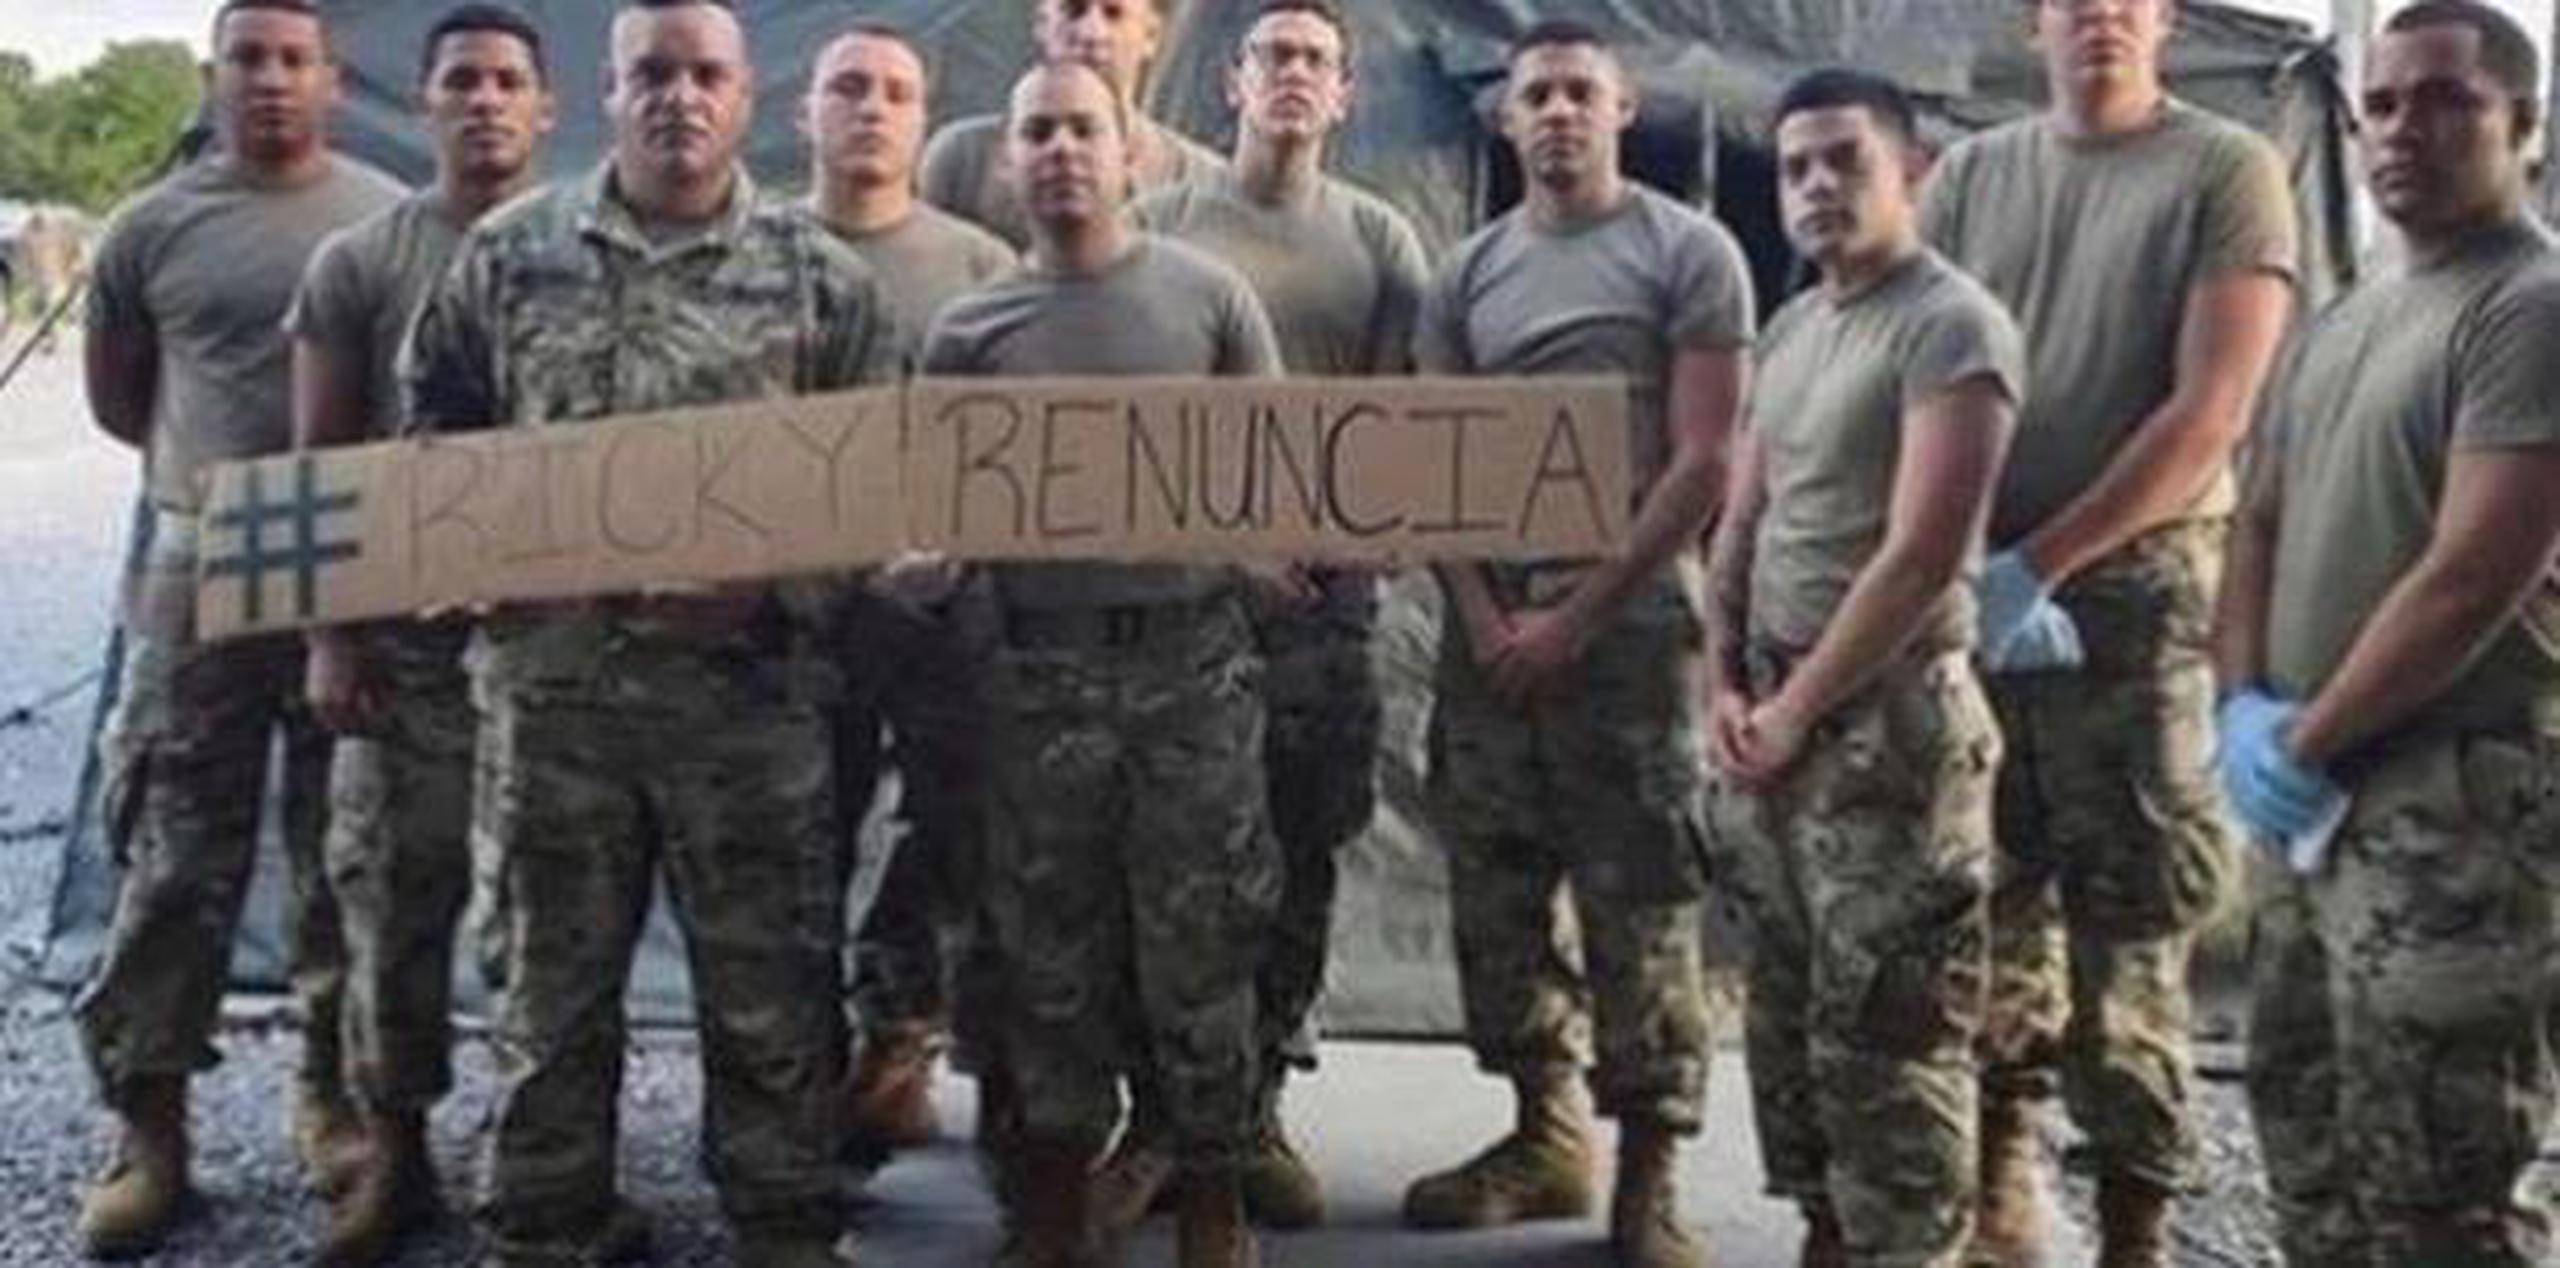 La foto muestra a 11 militares sujetando un cartel con el hashtag #RickyRenuncia. (Captura)